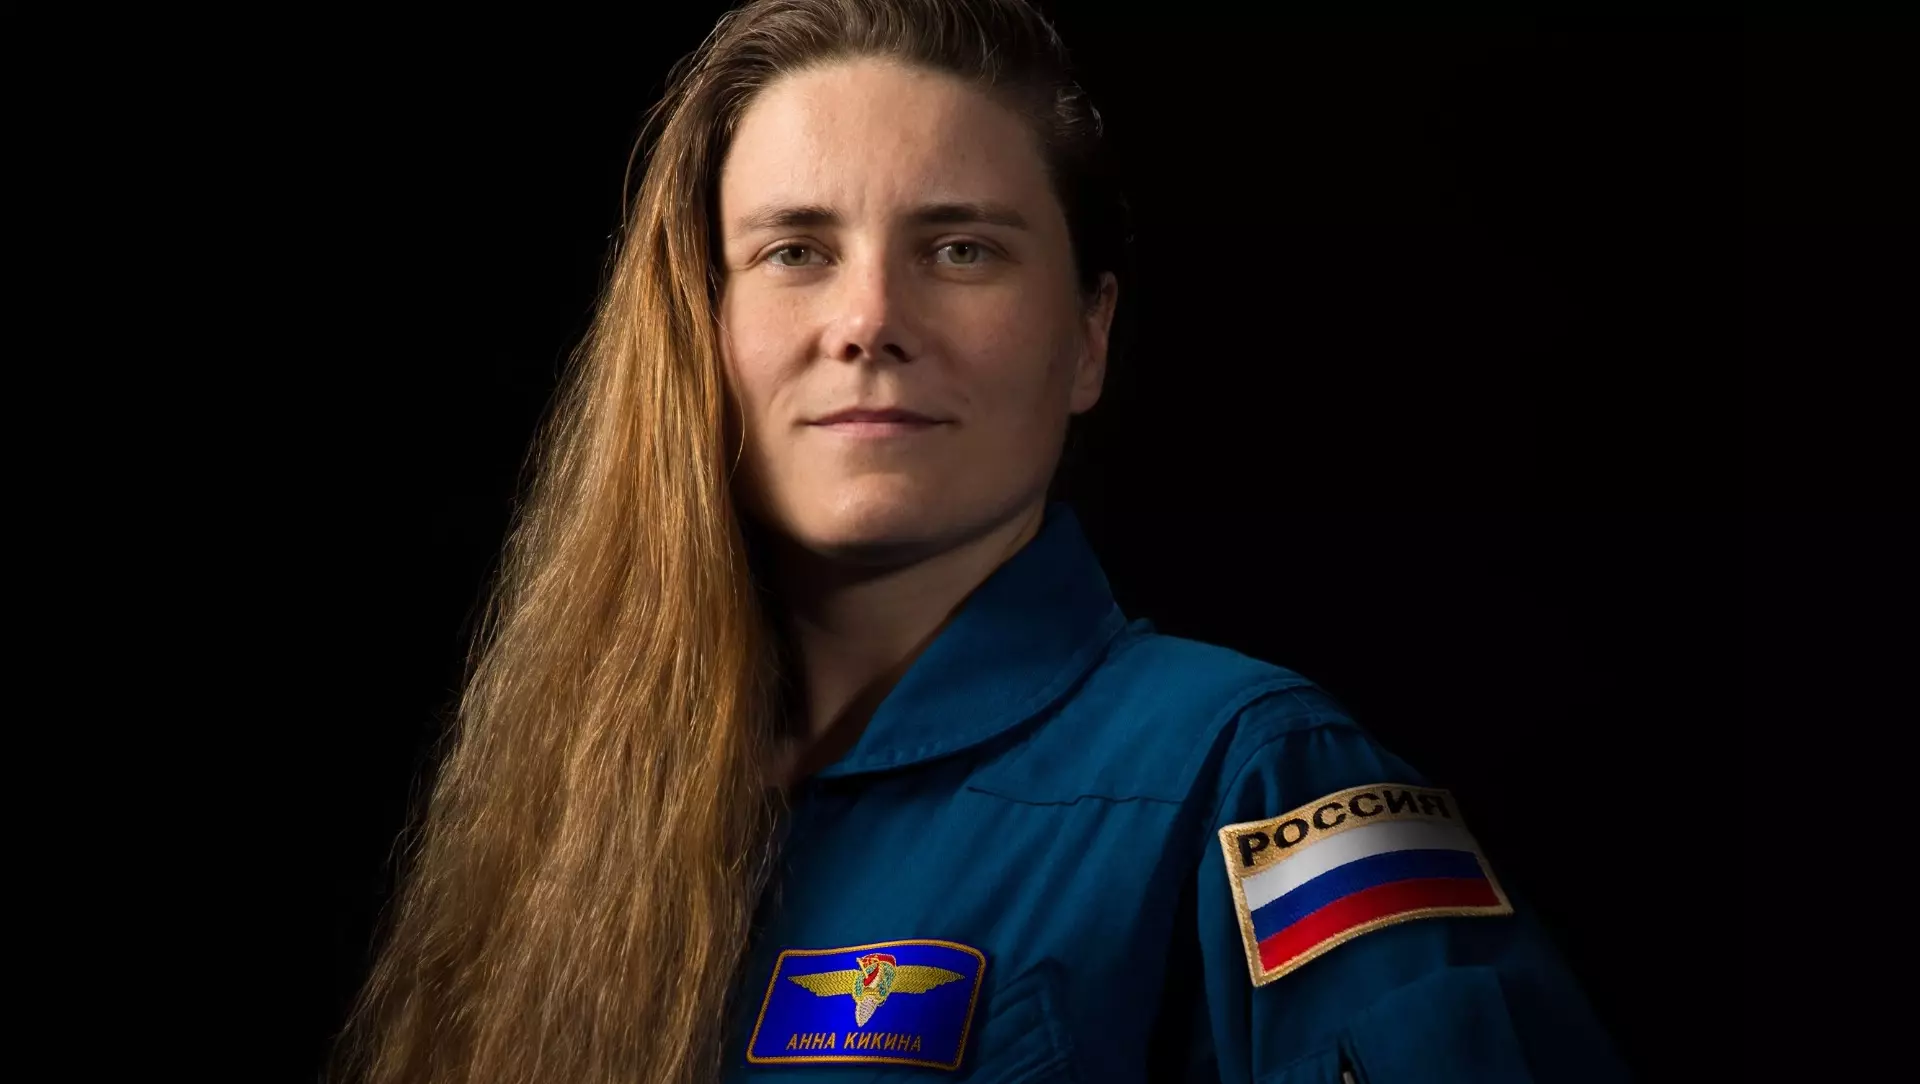 Из-за полета на американских кораблях космонавты могут не получить Героя России.